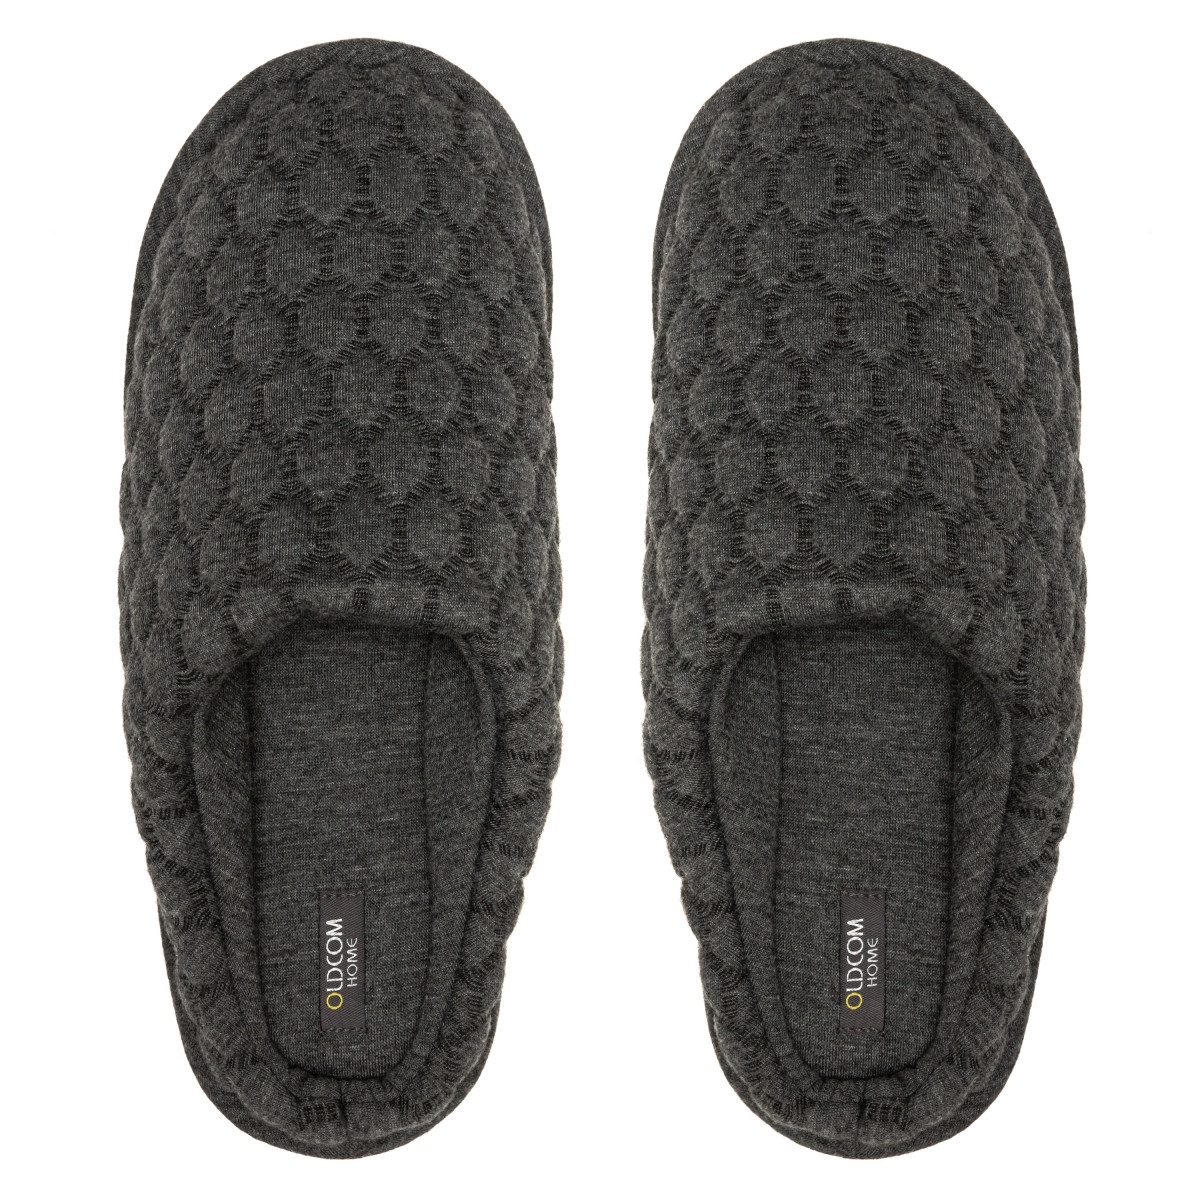 Men's Home slippers FAMILY, Gray